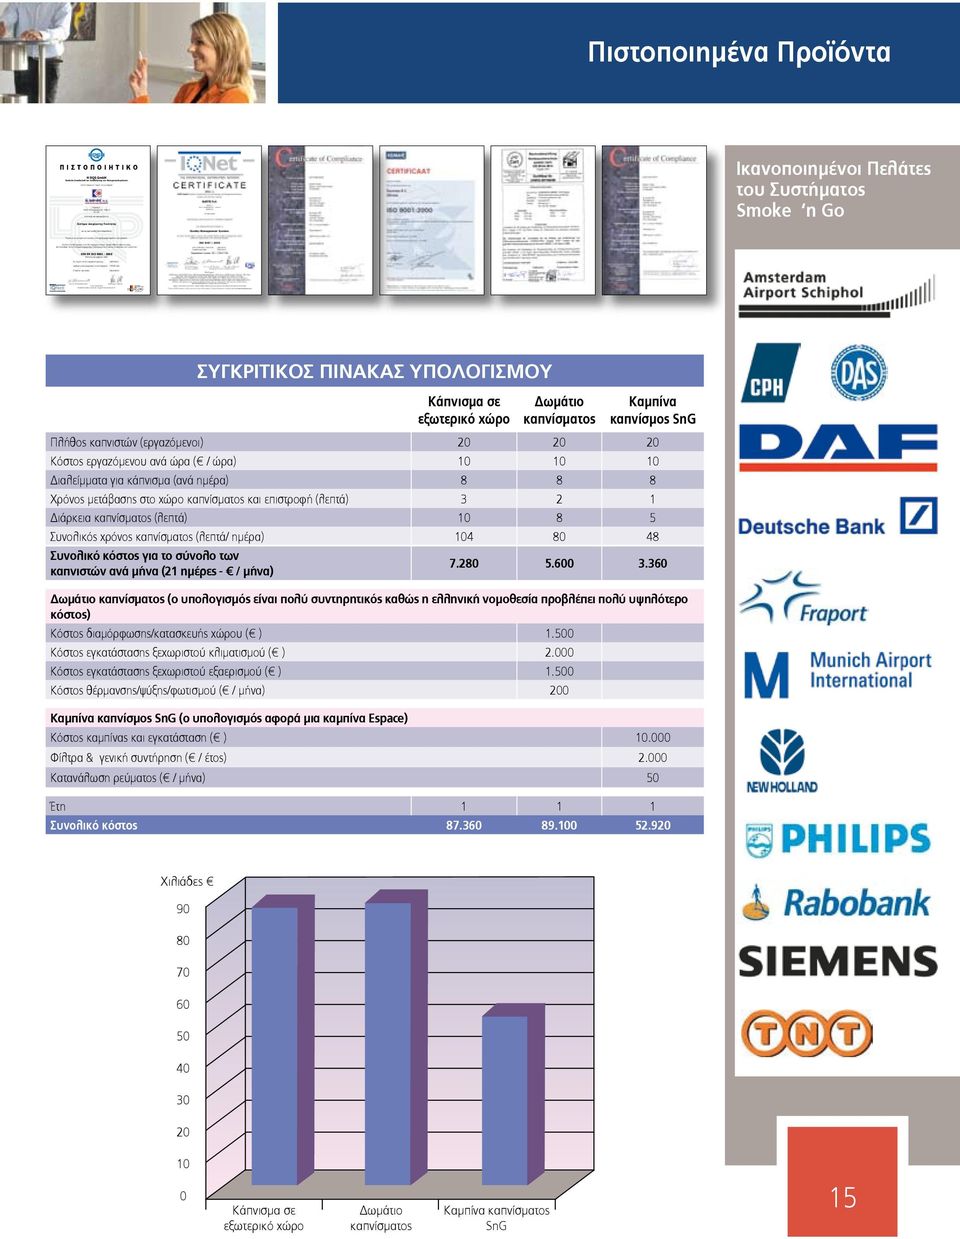 Μετά από επιθεώρηση, η οποία τεκμηριώνεται με σχετική έκθεση αξιολόγησης, διαπιστώθηκε ότι το Σύστημα Διαχείρισης Ποιότητας ικανοποιεί τις απαιτήσεις του προτύπου: DIN EN ISO 9001 : 2000 Έκδοση